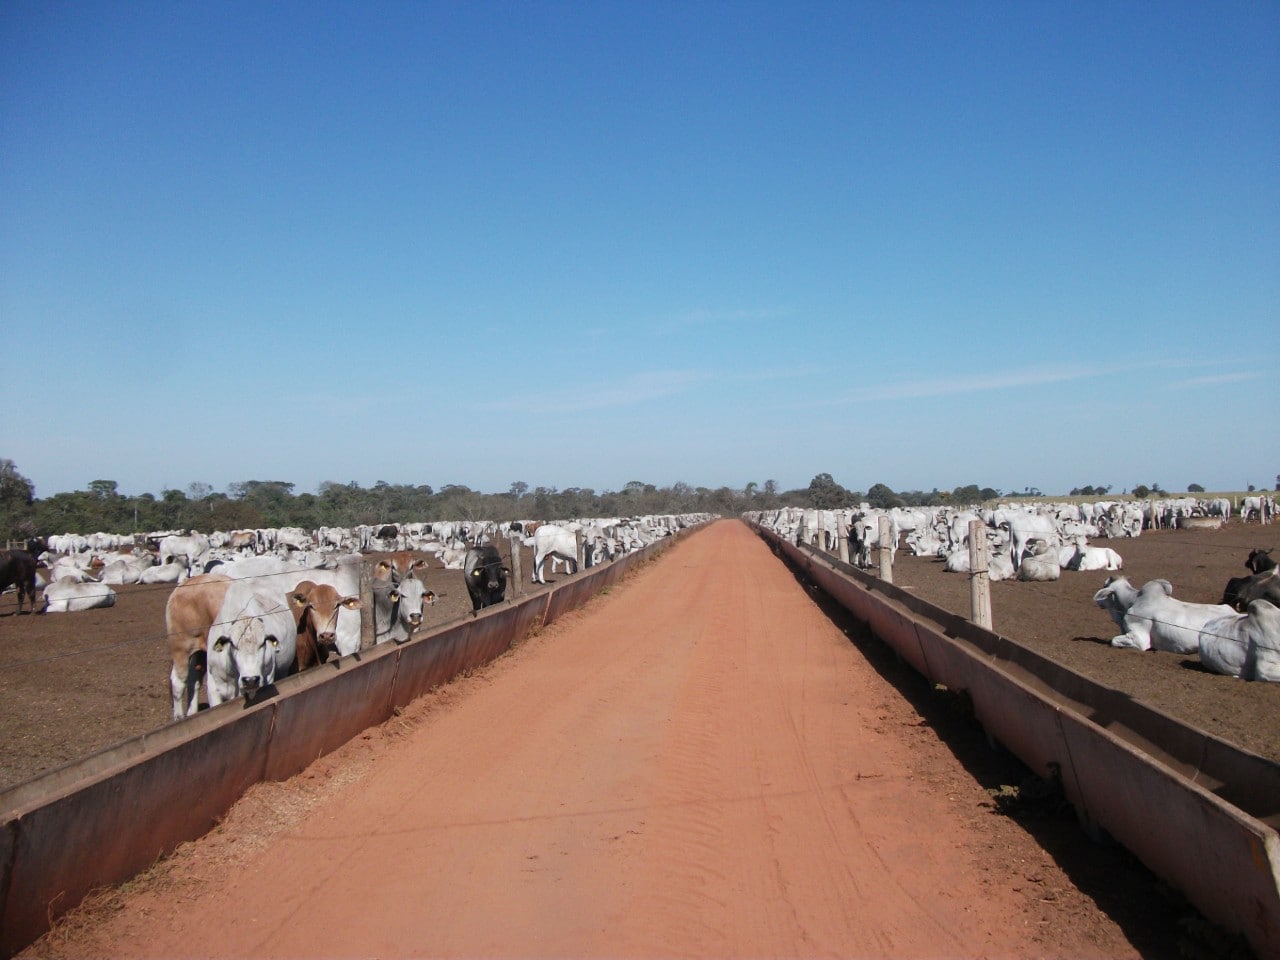 10 novas tendências que você precisa saber sobre confinamento de bovinos de corte